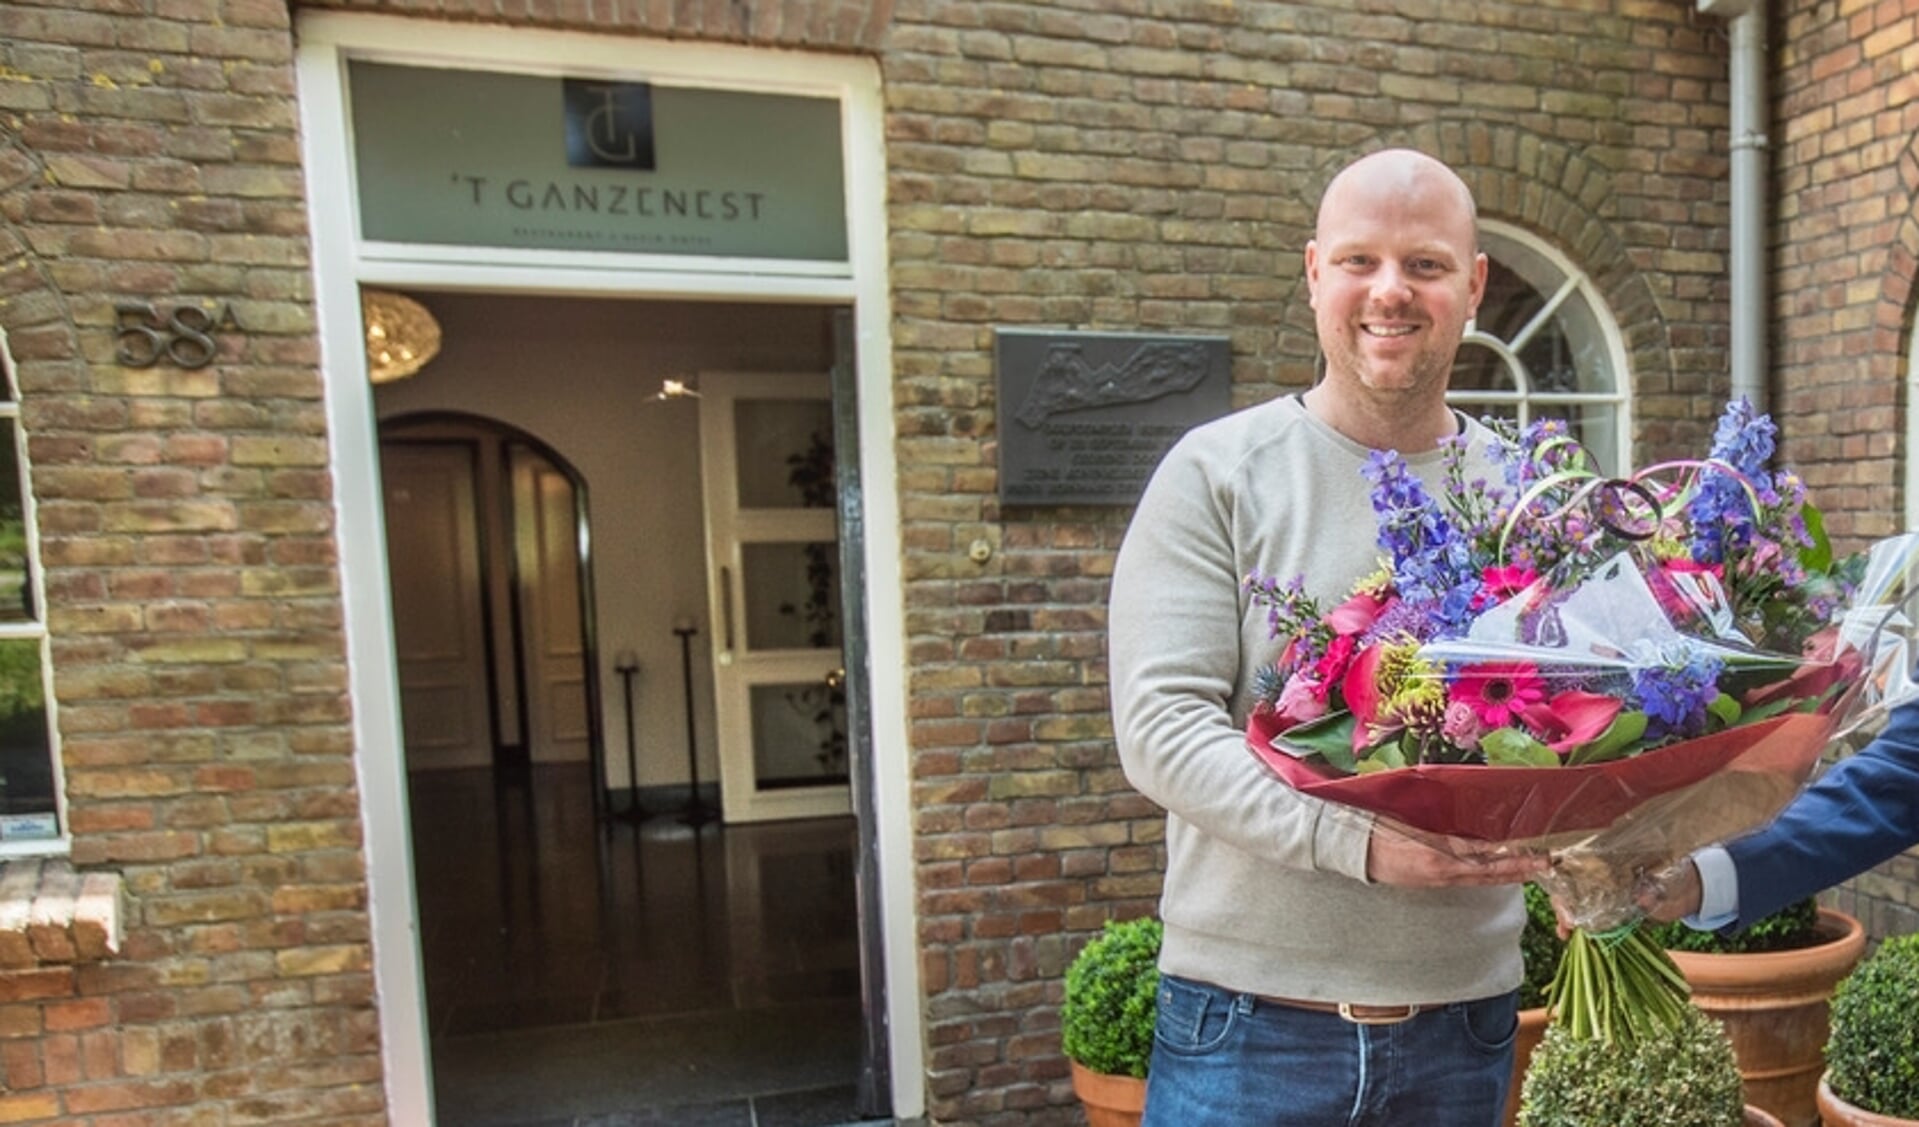 Erik Tas, eigenaar van 't Ganzenest, kreeg eind mei dit jaar voor het eerst een Michelin-ster toegekend.